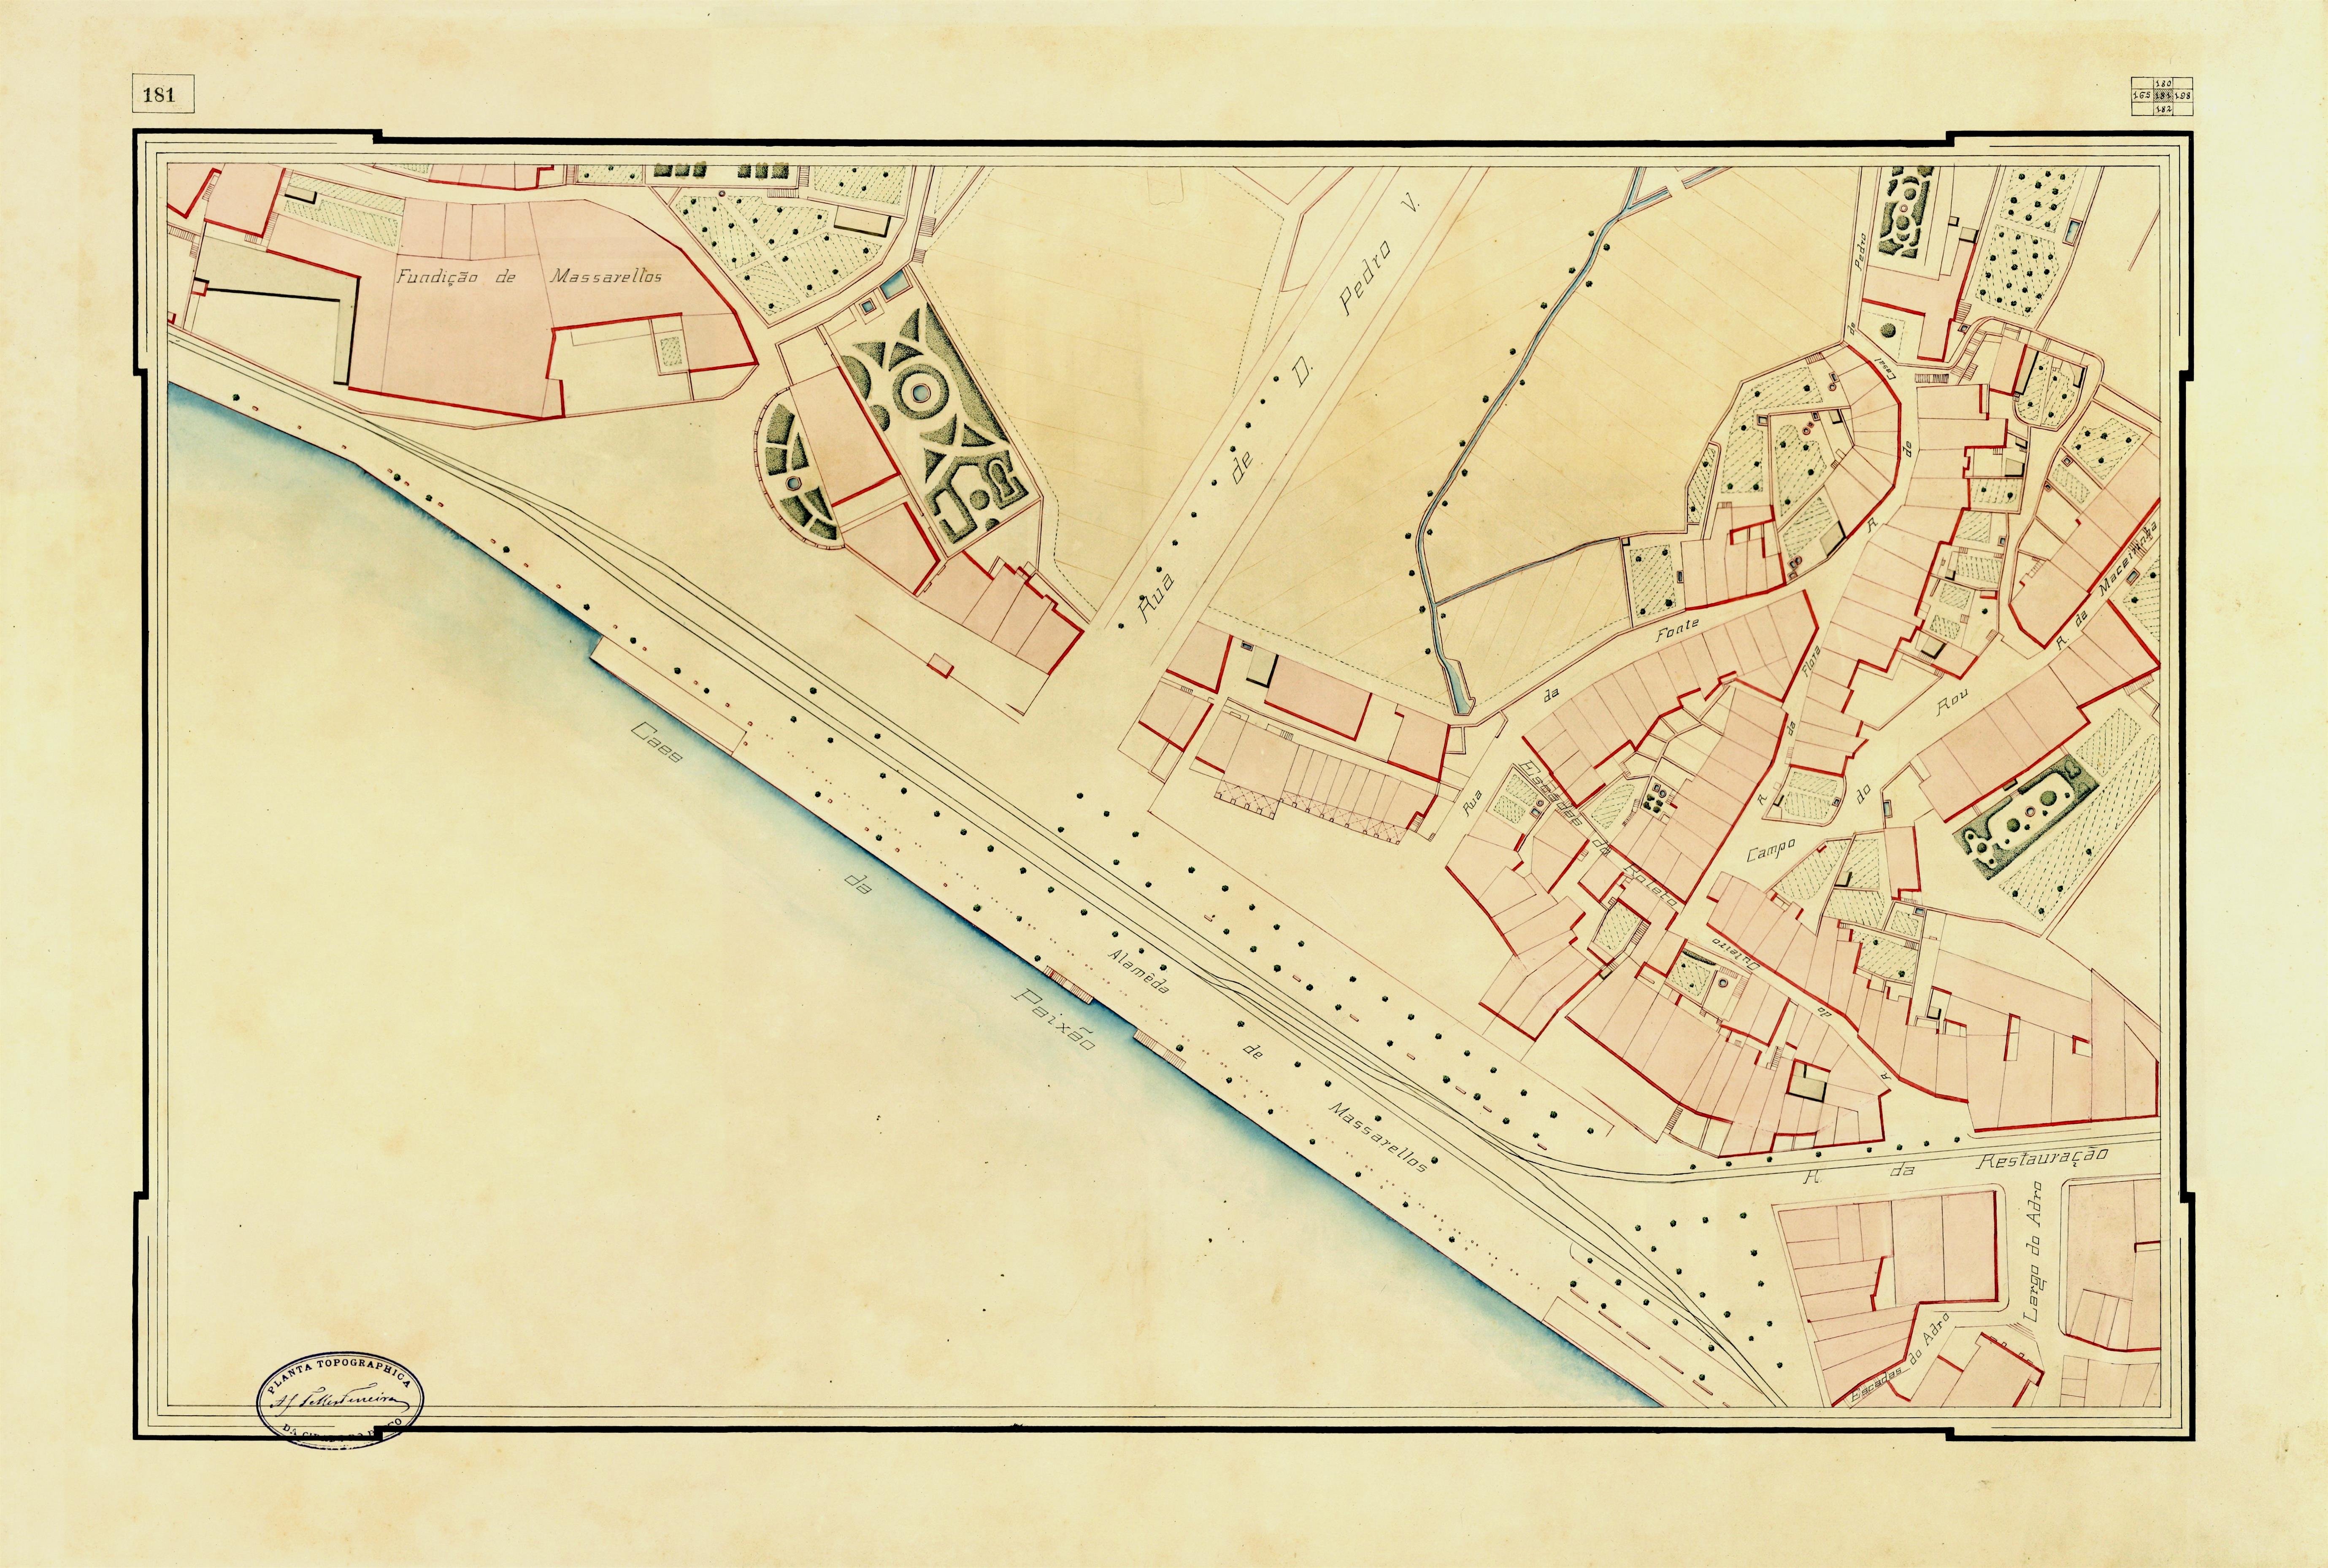 Planta topográfica da cidade do Porto : [quadrícula 181]